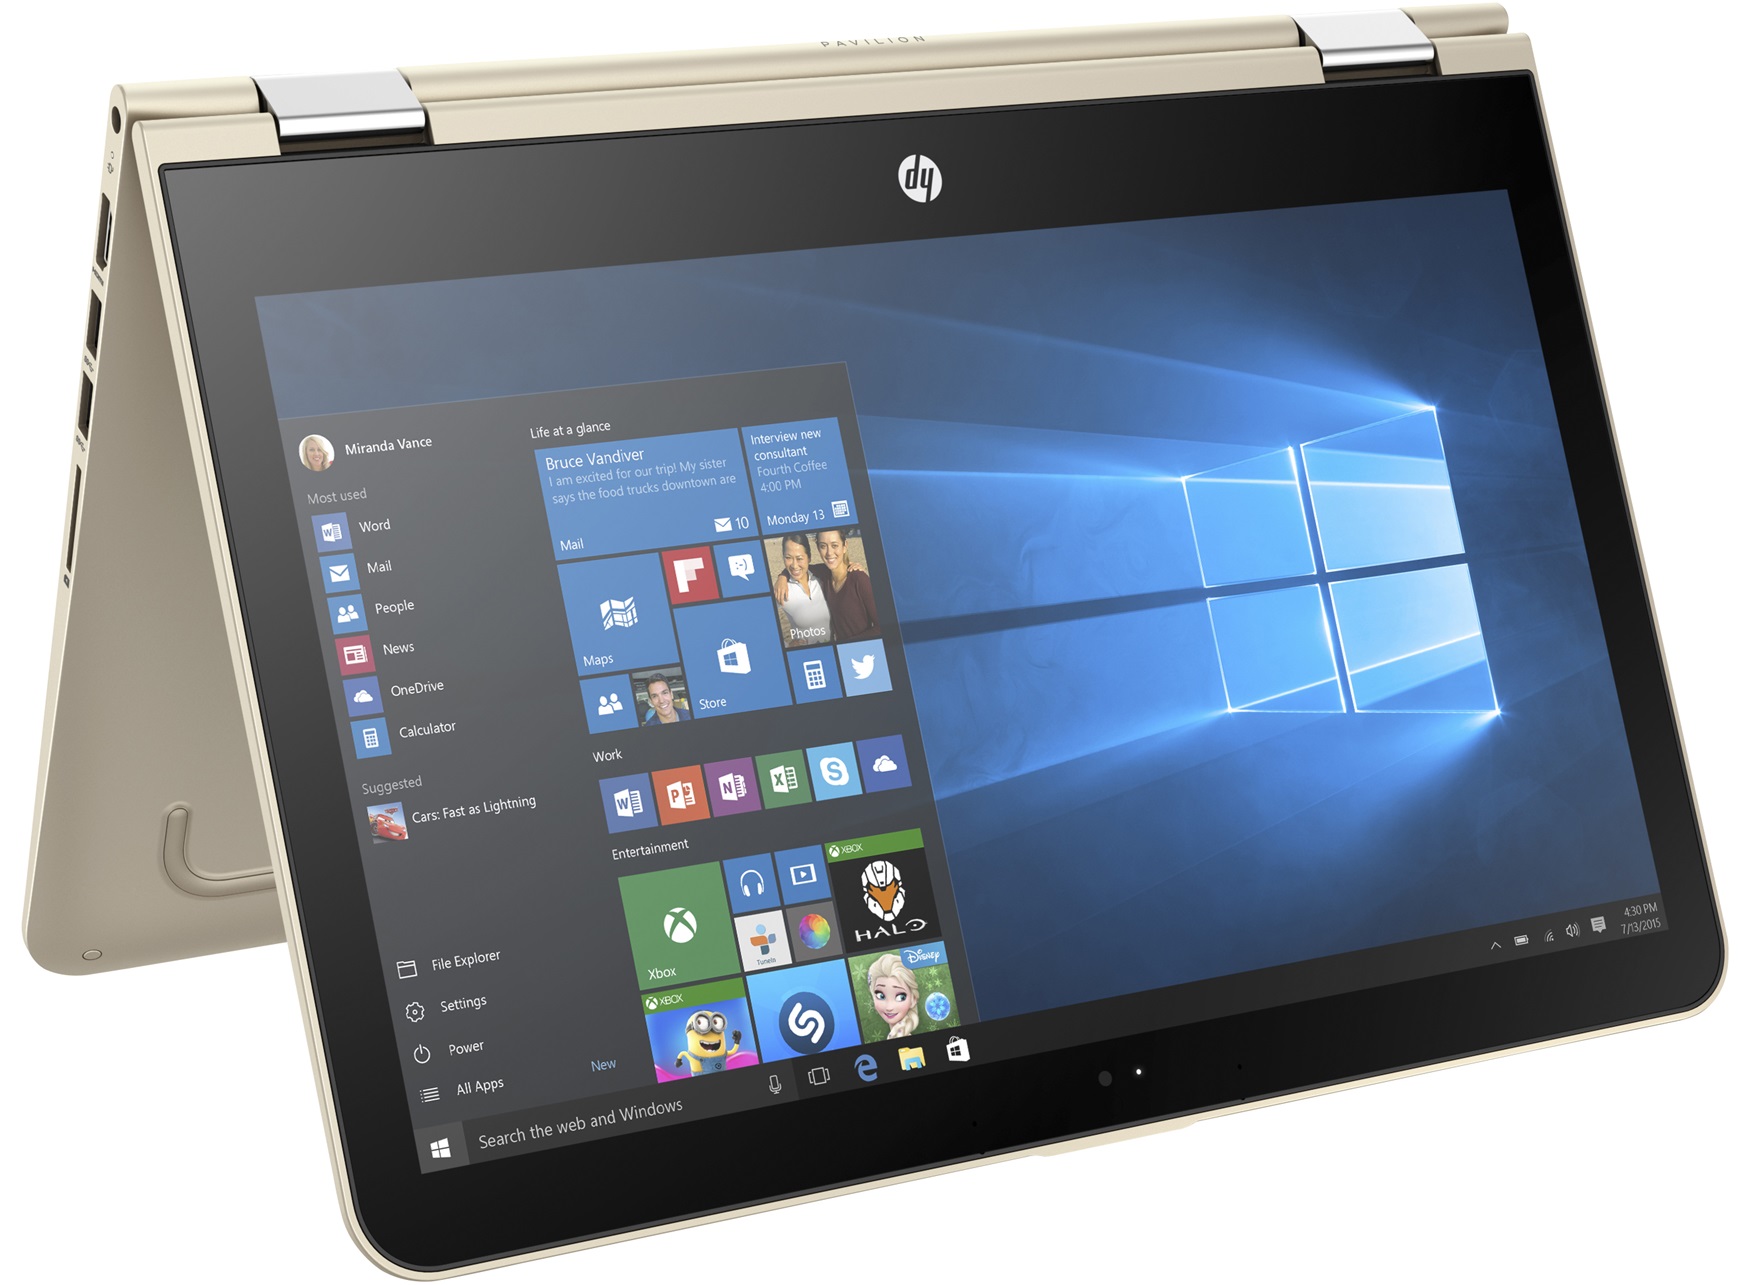 Laptop màn hình cảm ứng HP Pavilion x360 11-u047tu, Core i3 6100U/4GB/500GB/Win 10 (X3C25PA)